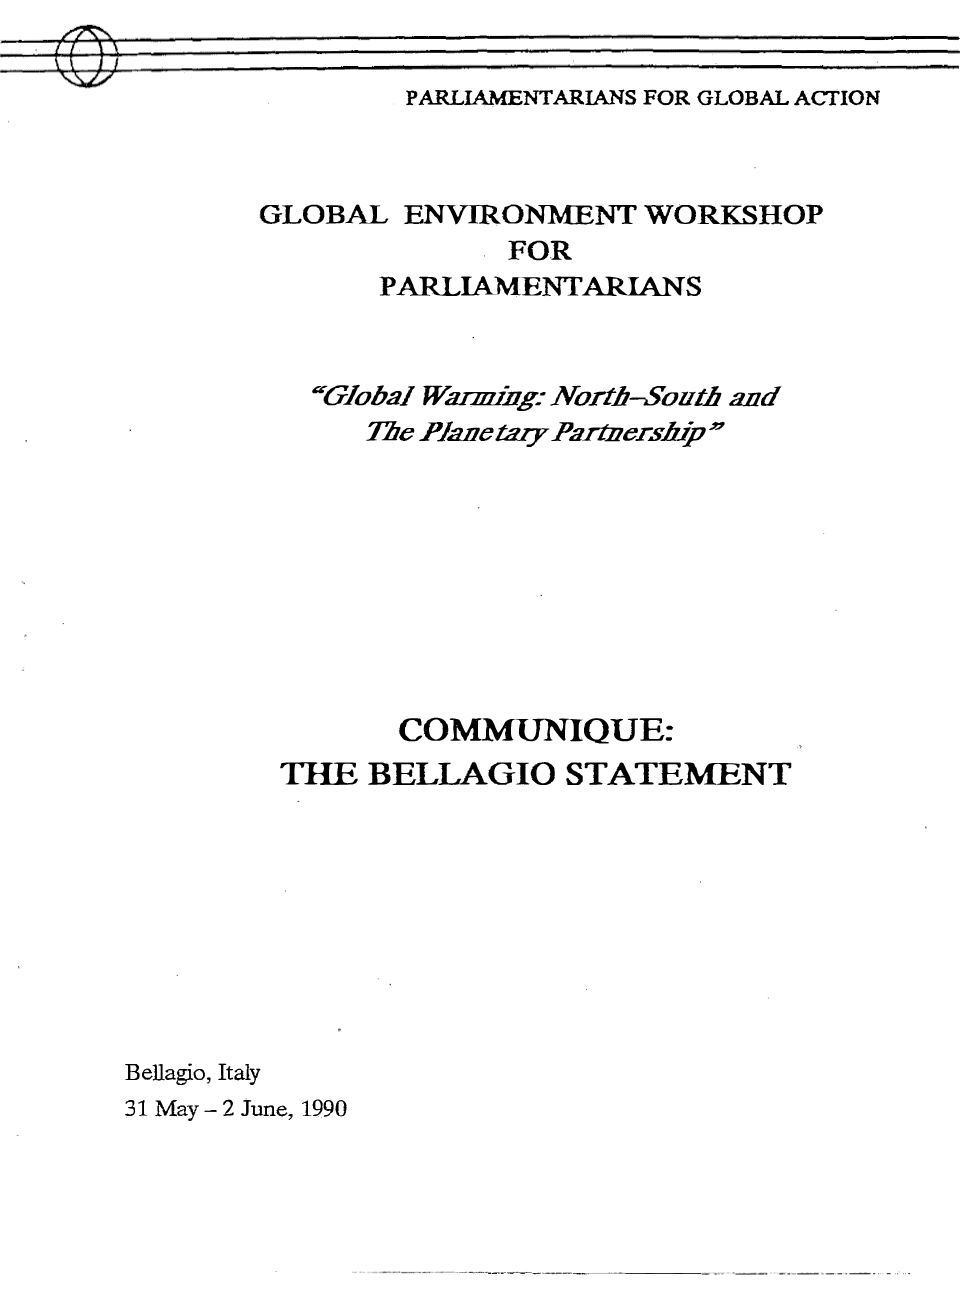 Communiqué de Bellagio sur le changement climatique (1990)